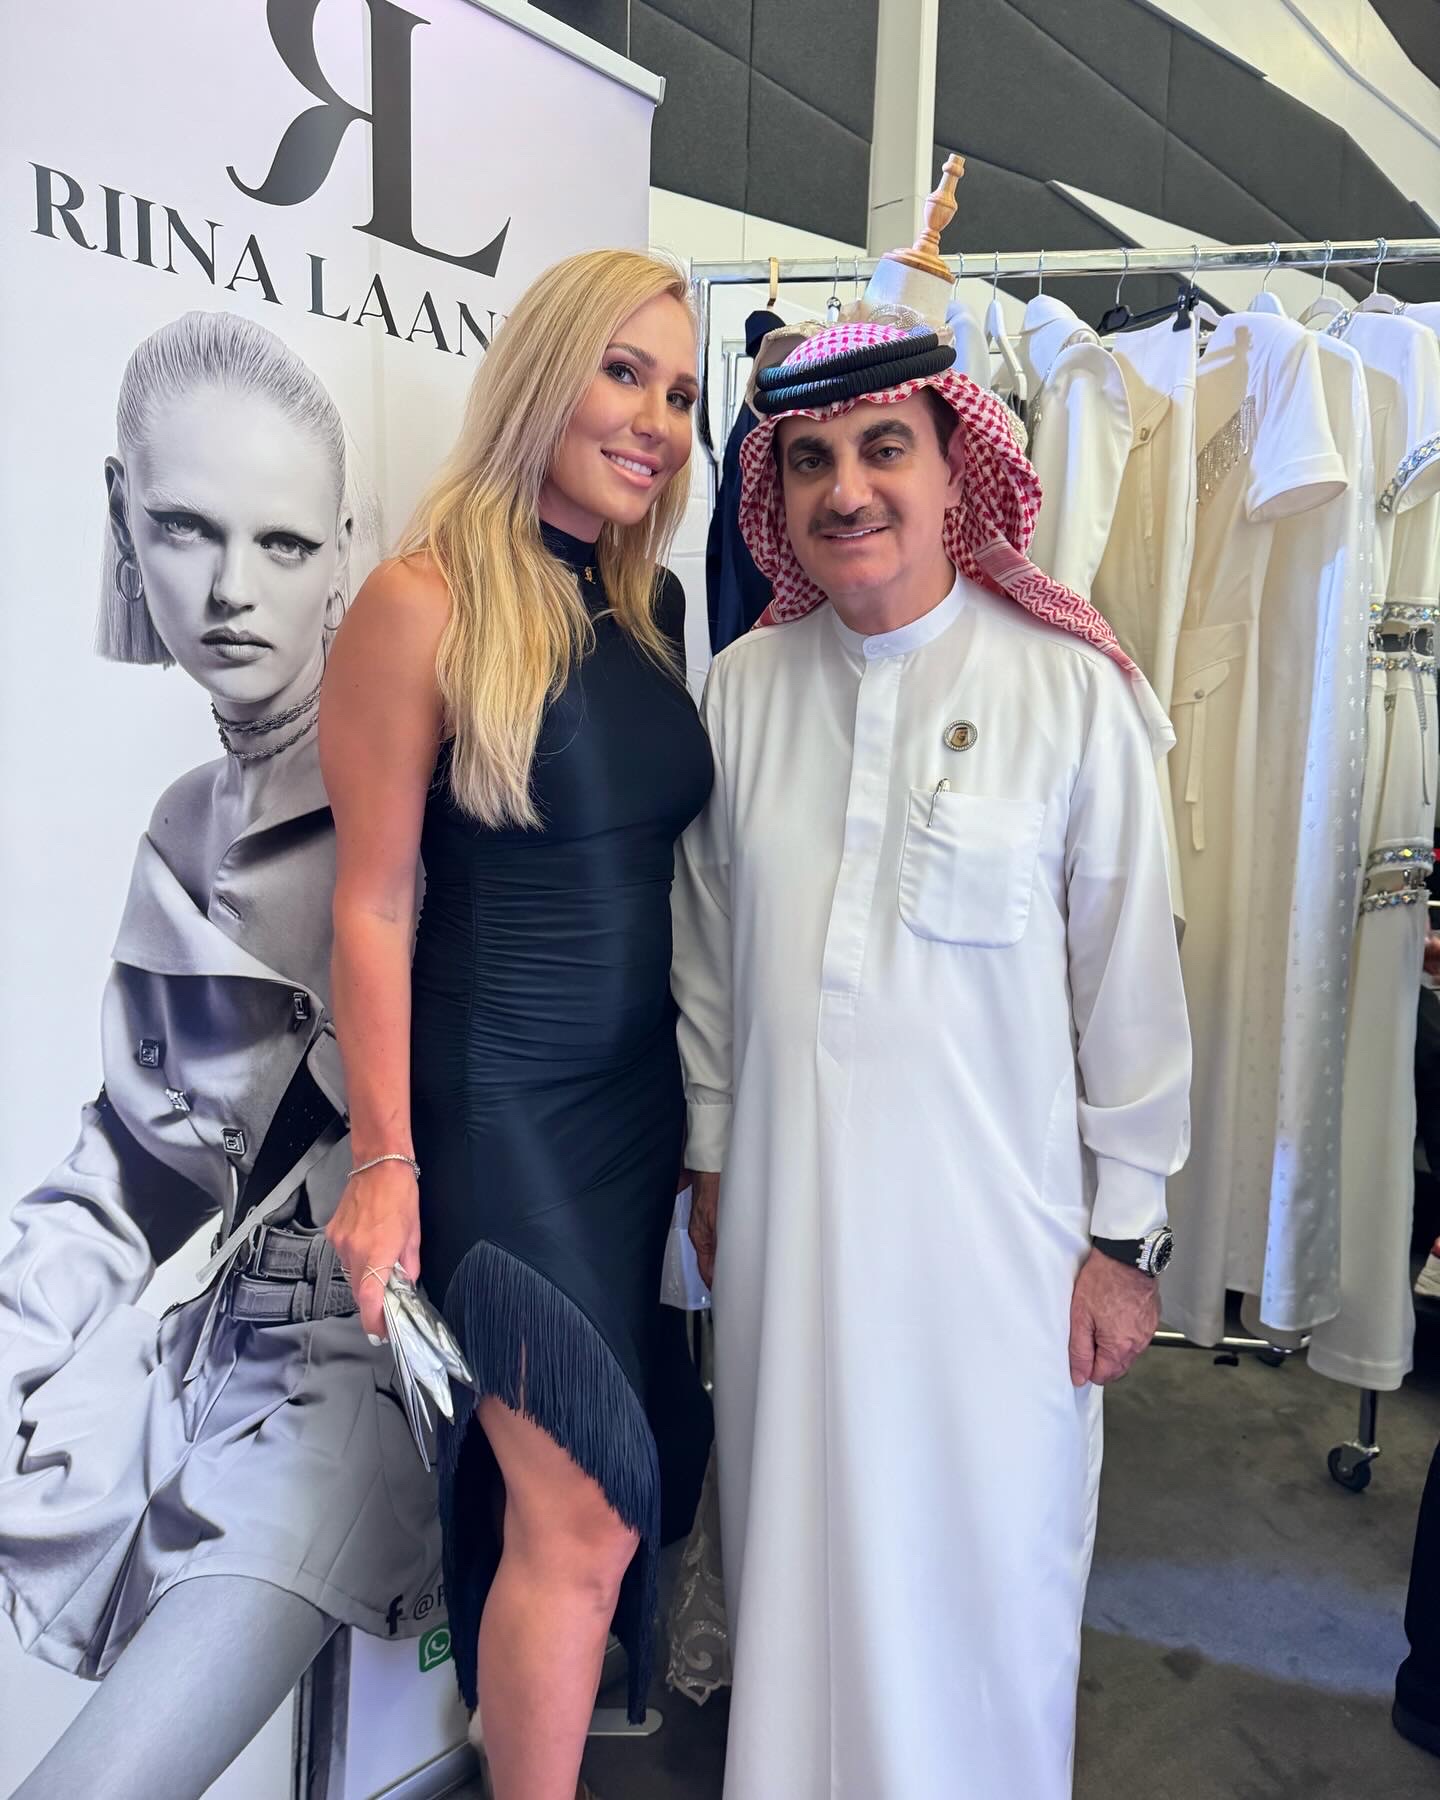 Riina Laanetu esitles spetsiaalselt Dubai ja Lähis-Ida turule suunatud kollektsiooni, millele lisasid müstilisust ja isikupära Lähis-Idale iseloomulikud peakatt